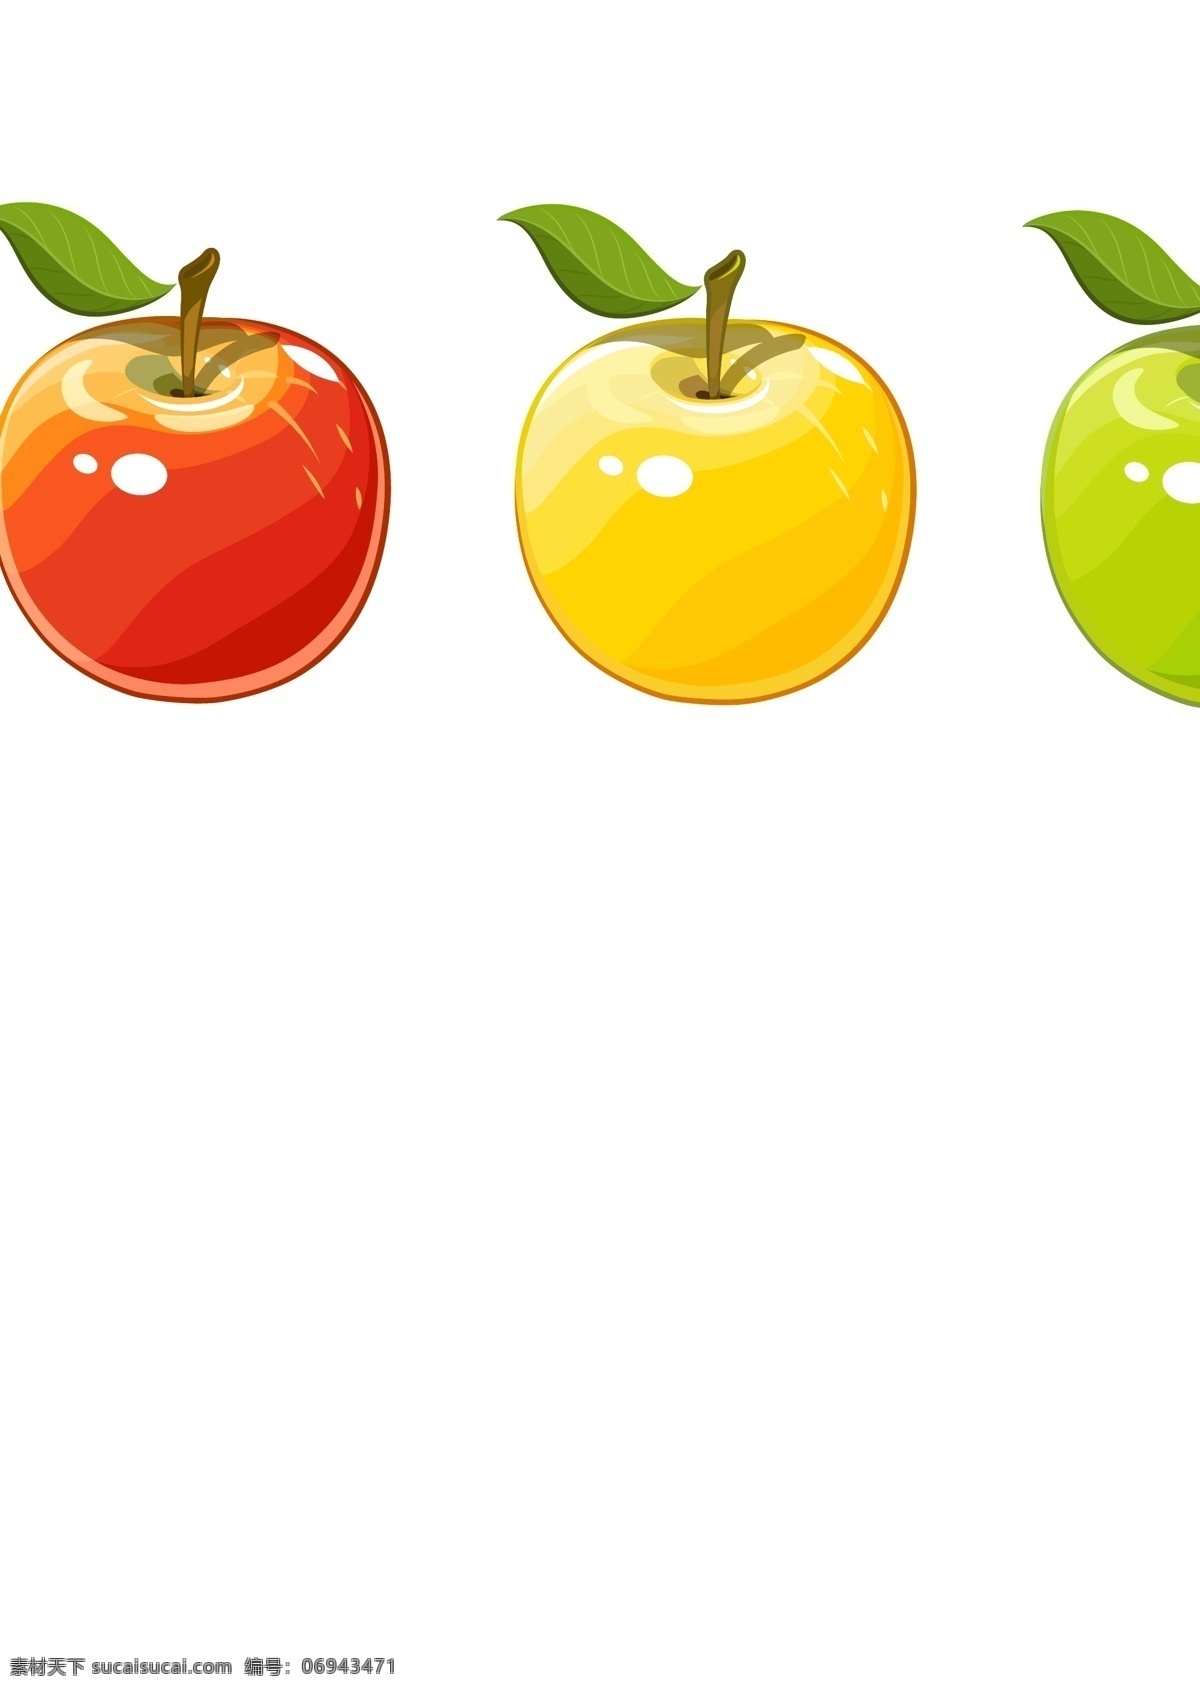 手绘 矢量 苹果 手绘矢量苹果 手绘苹果 矢量苹果 红苹果 绿苹果 苹果漫画 水果蔬菜素材 水果蔬菜